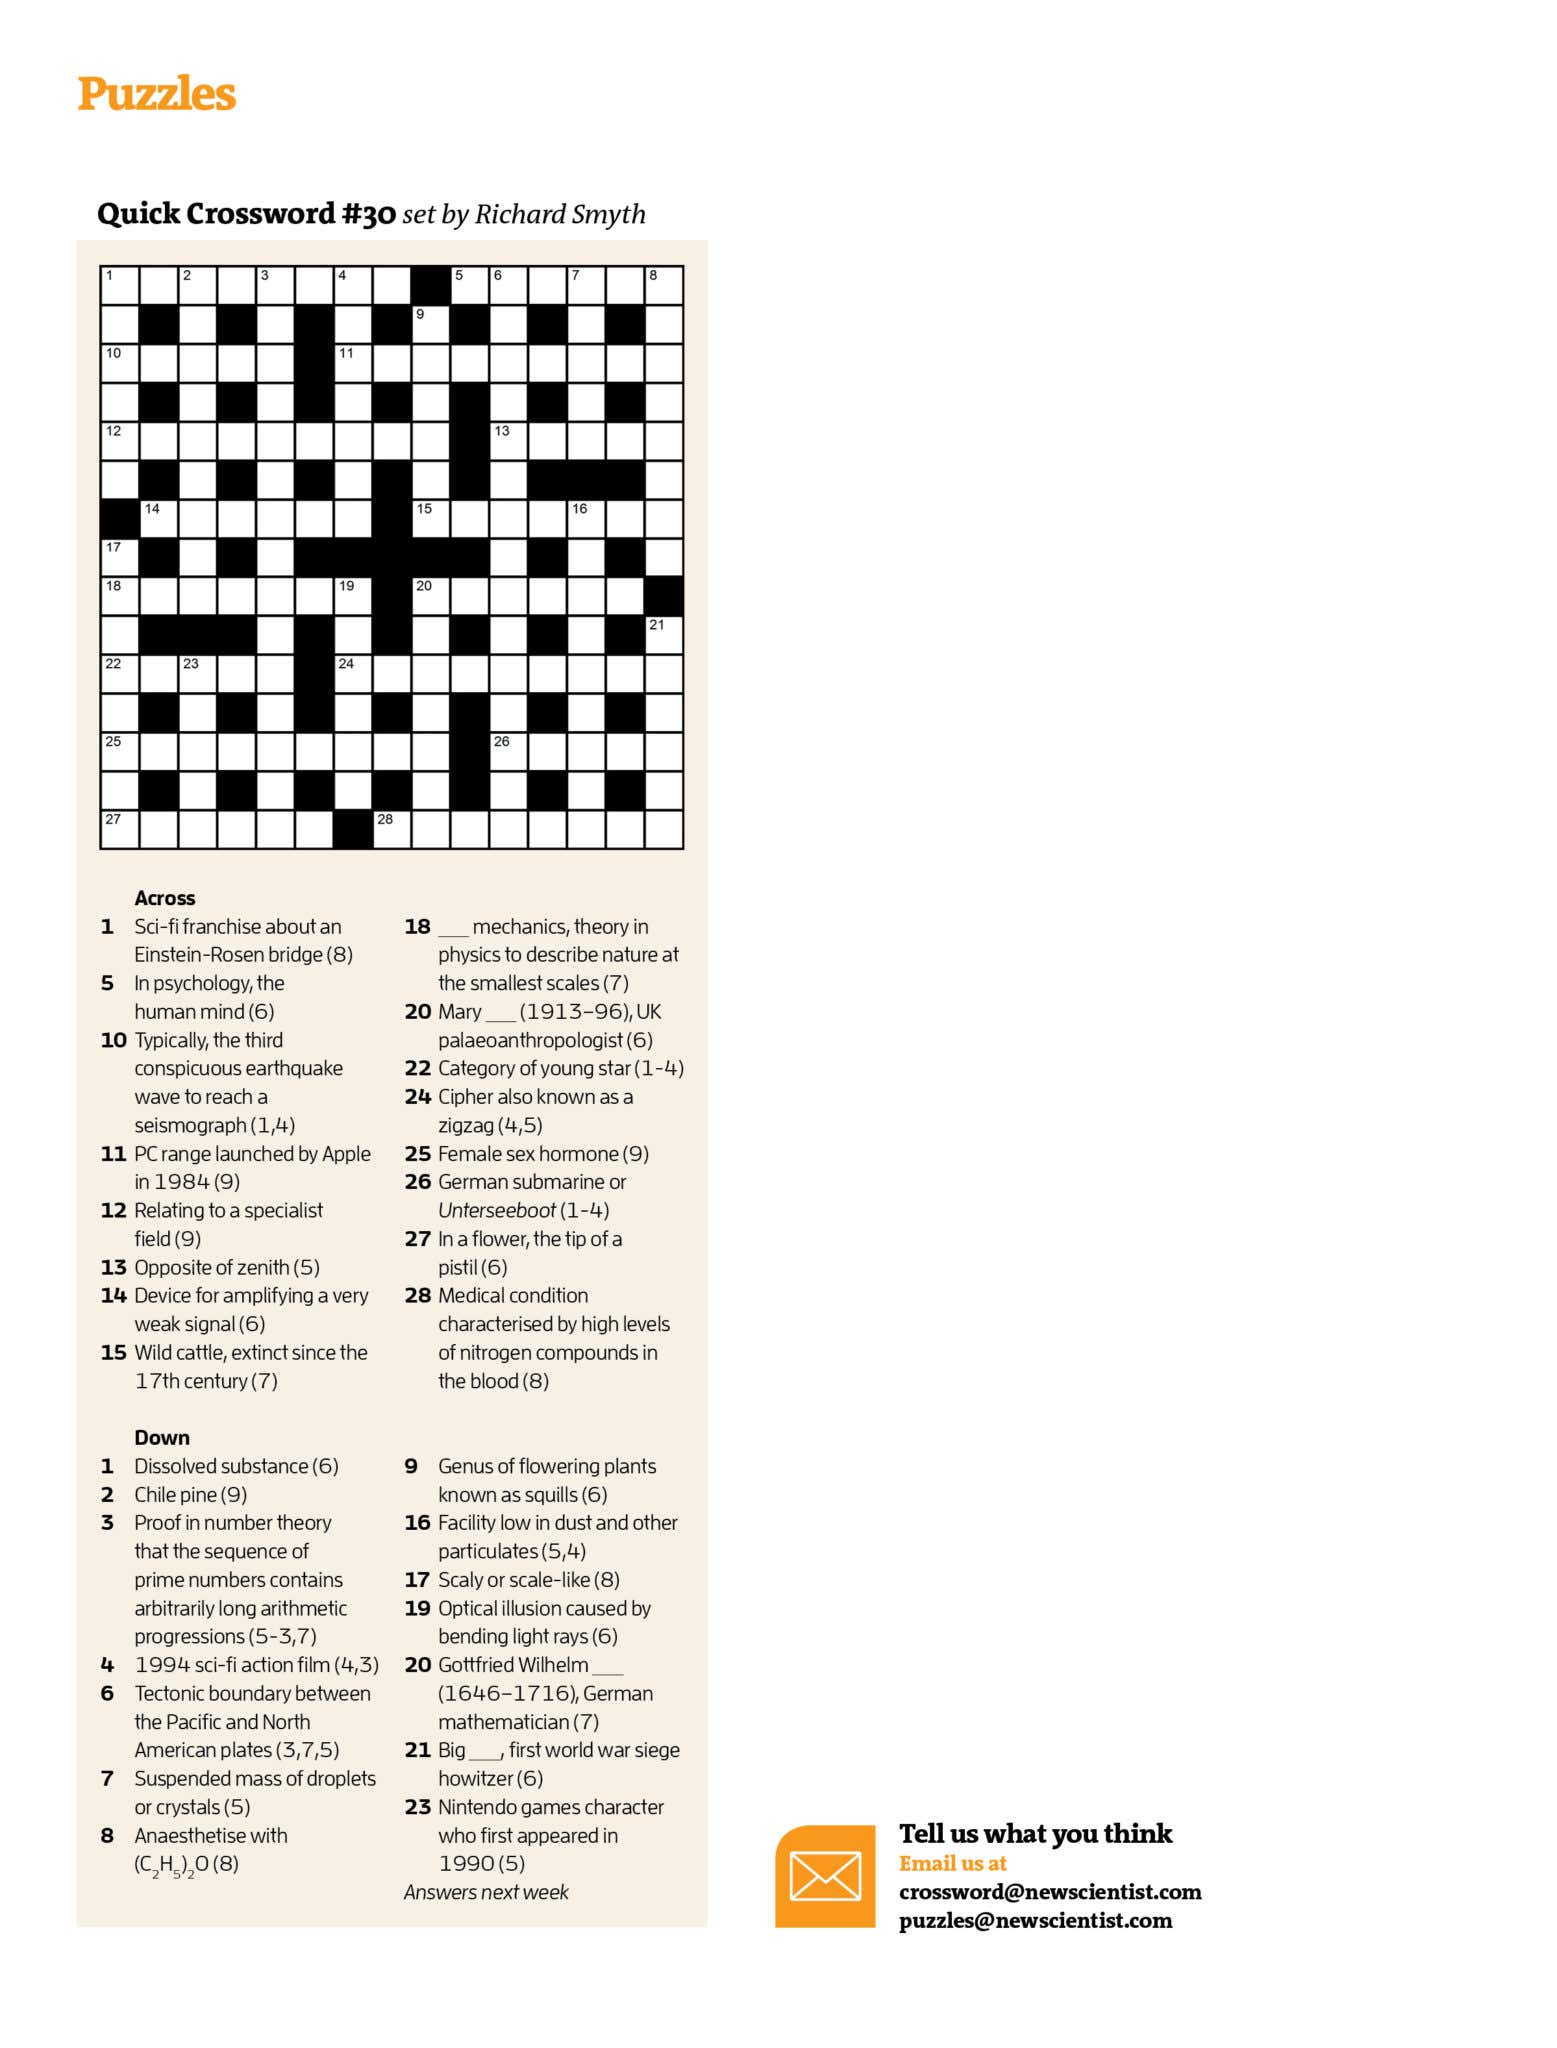 Quick Crossword #30 | New Scientist - Printable German Crosswords